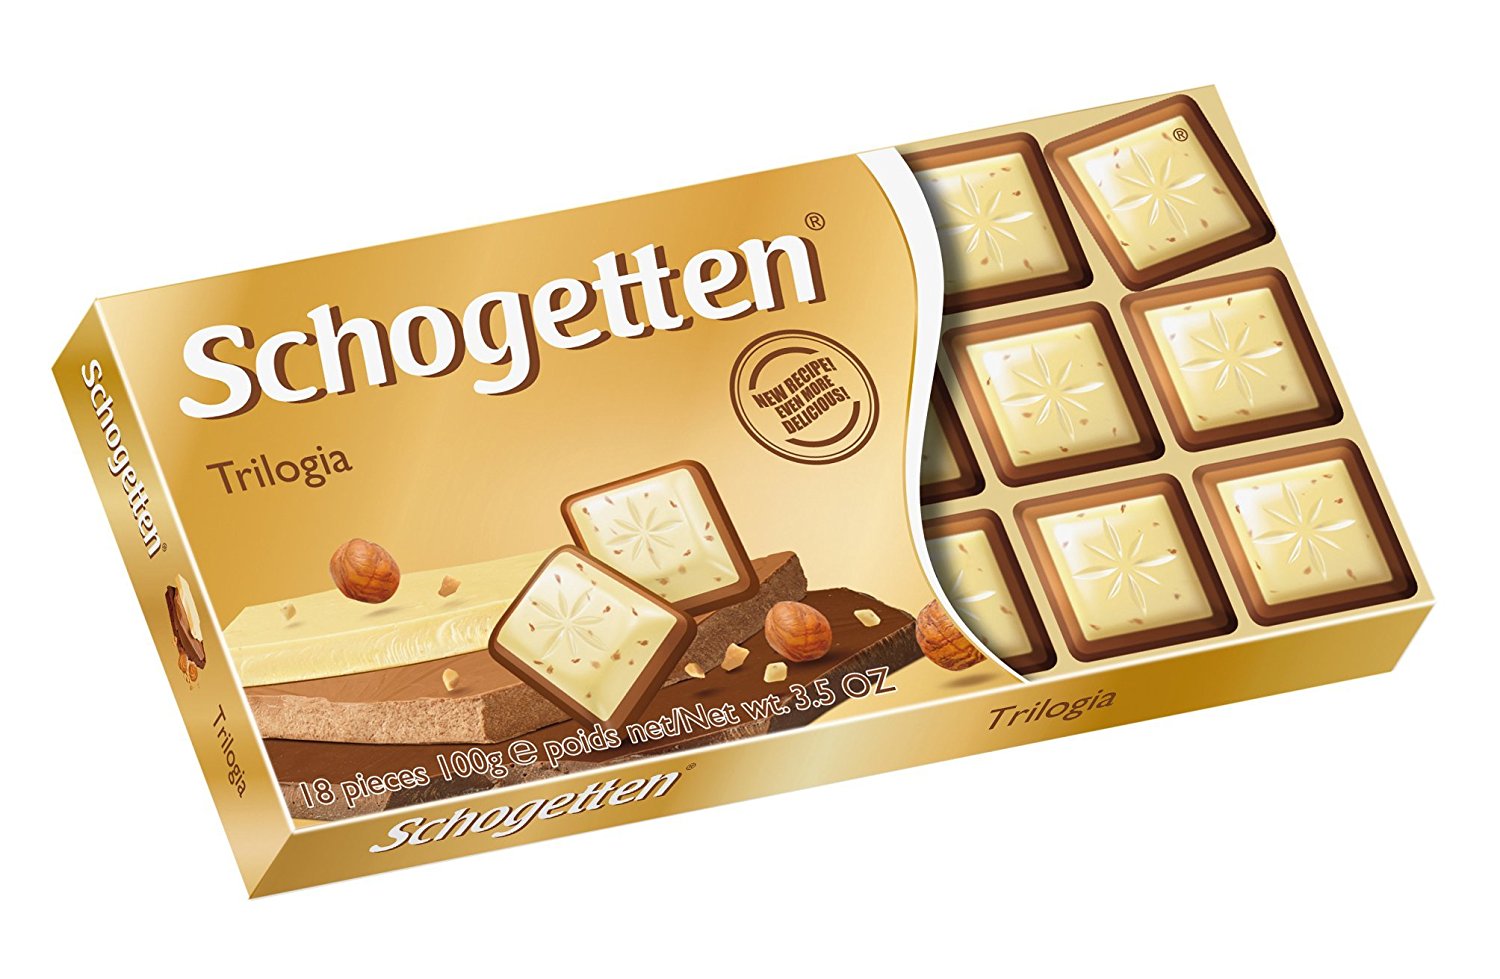 Buy Schogetten Ð Taste of the year Vanilla-Wafer